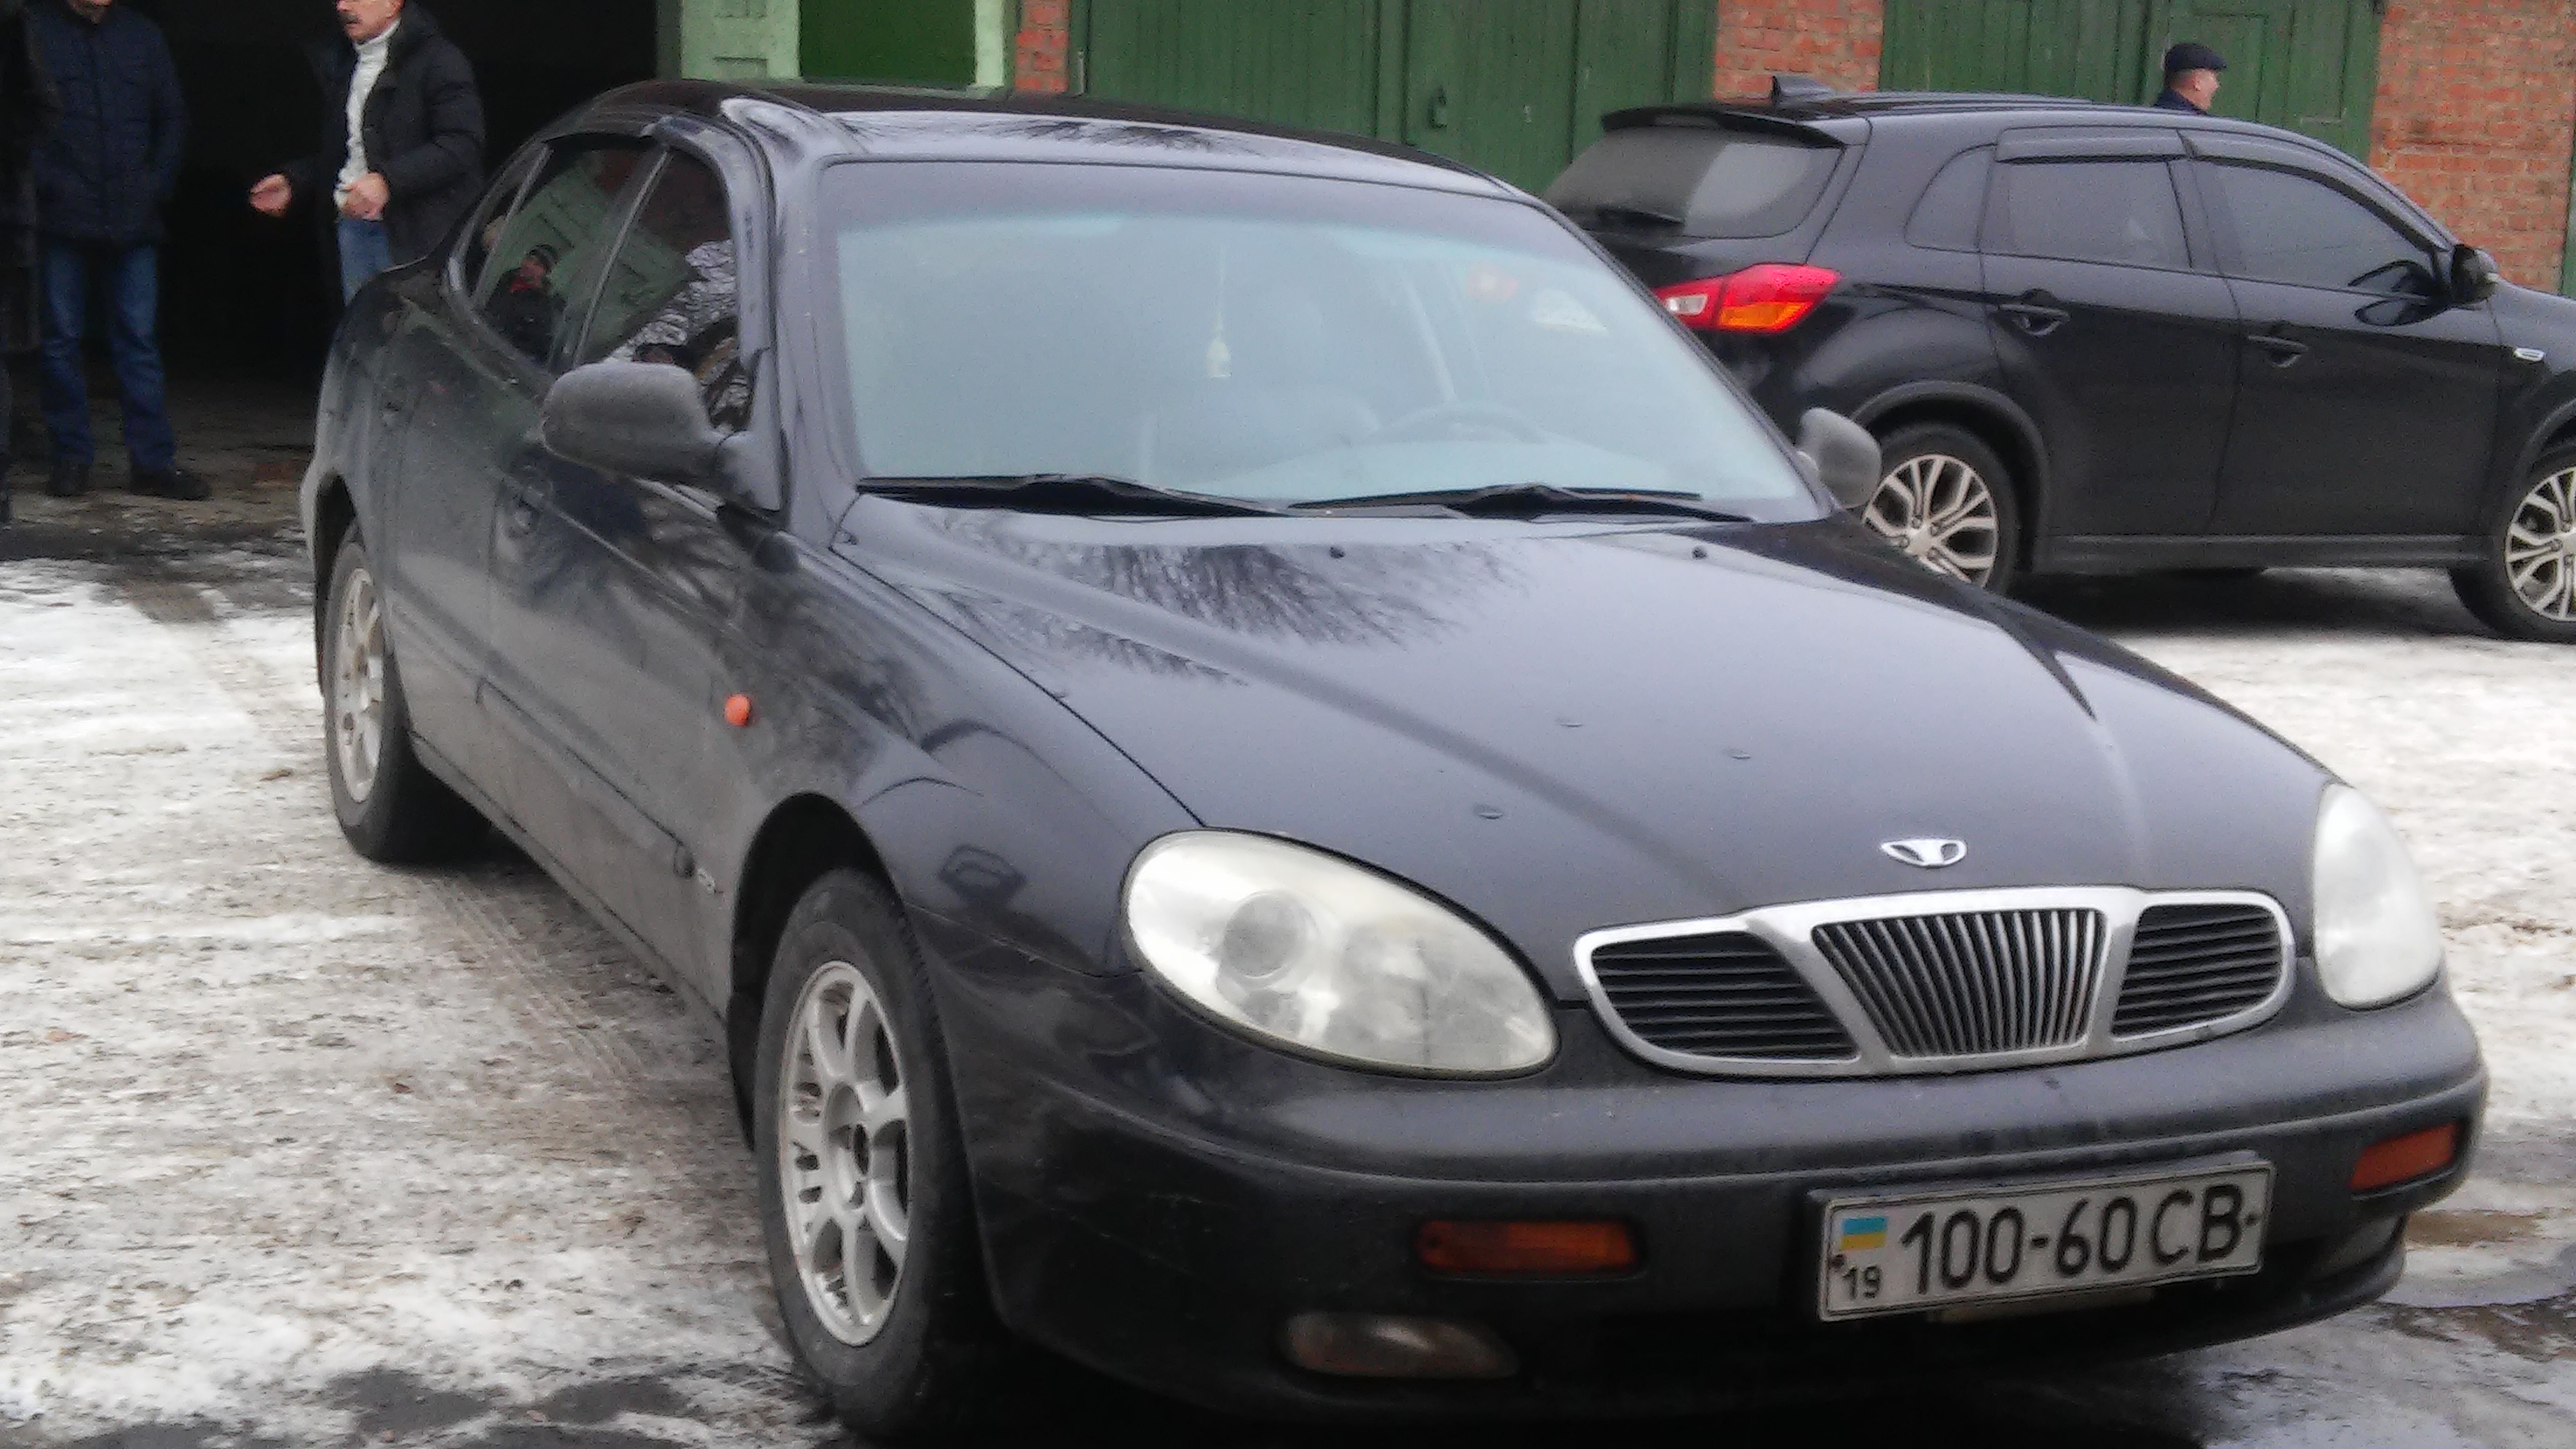 Автомобіль DAEWOO Leganza, рік випуску 1998, 10060 СВ, м.Суми, вул.Іллінська, будинок 97 зображення